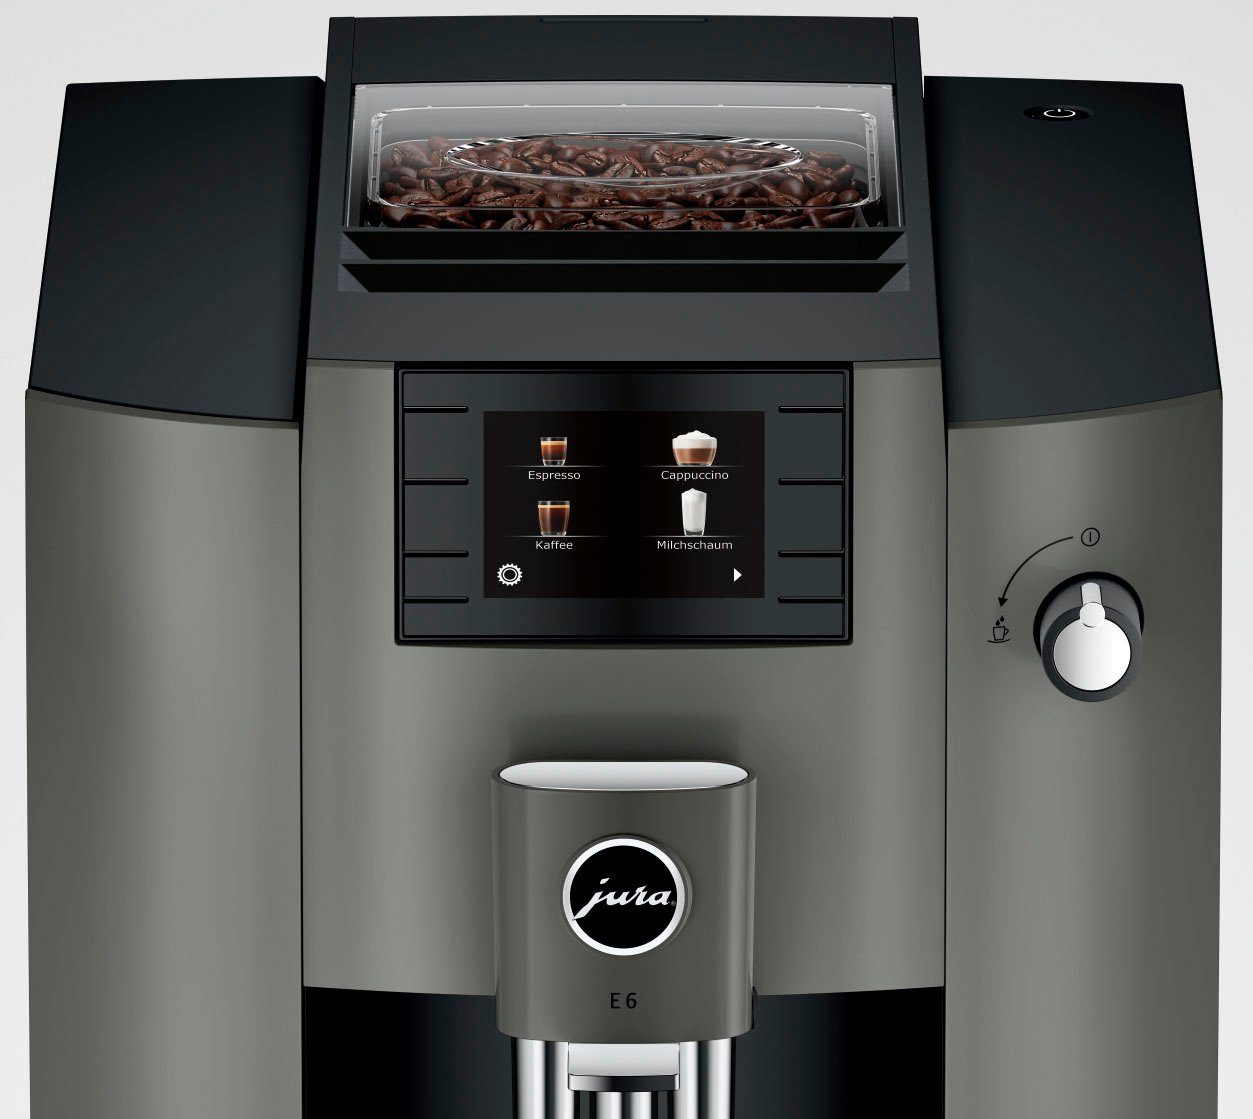 Kaffeevollautomat E6 (EC) 15439 JURA